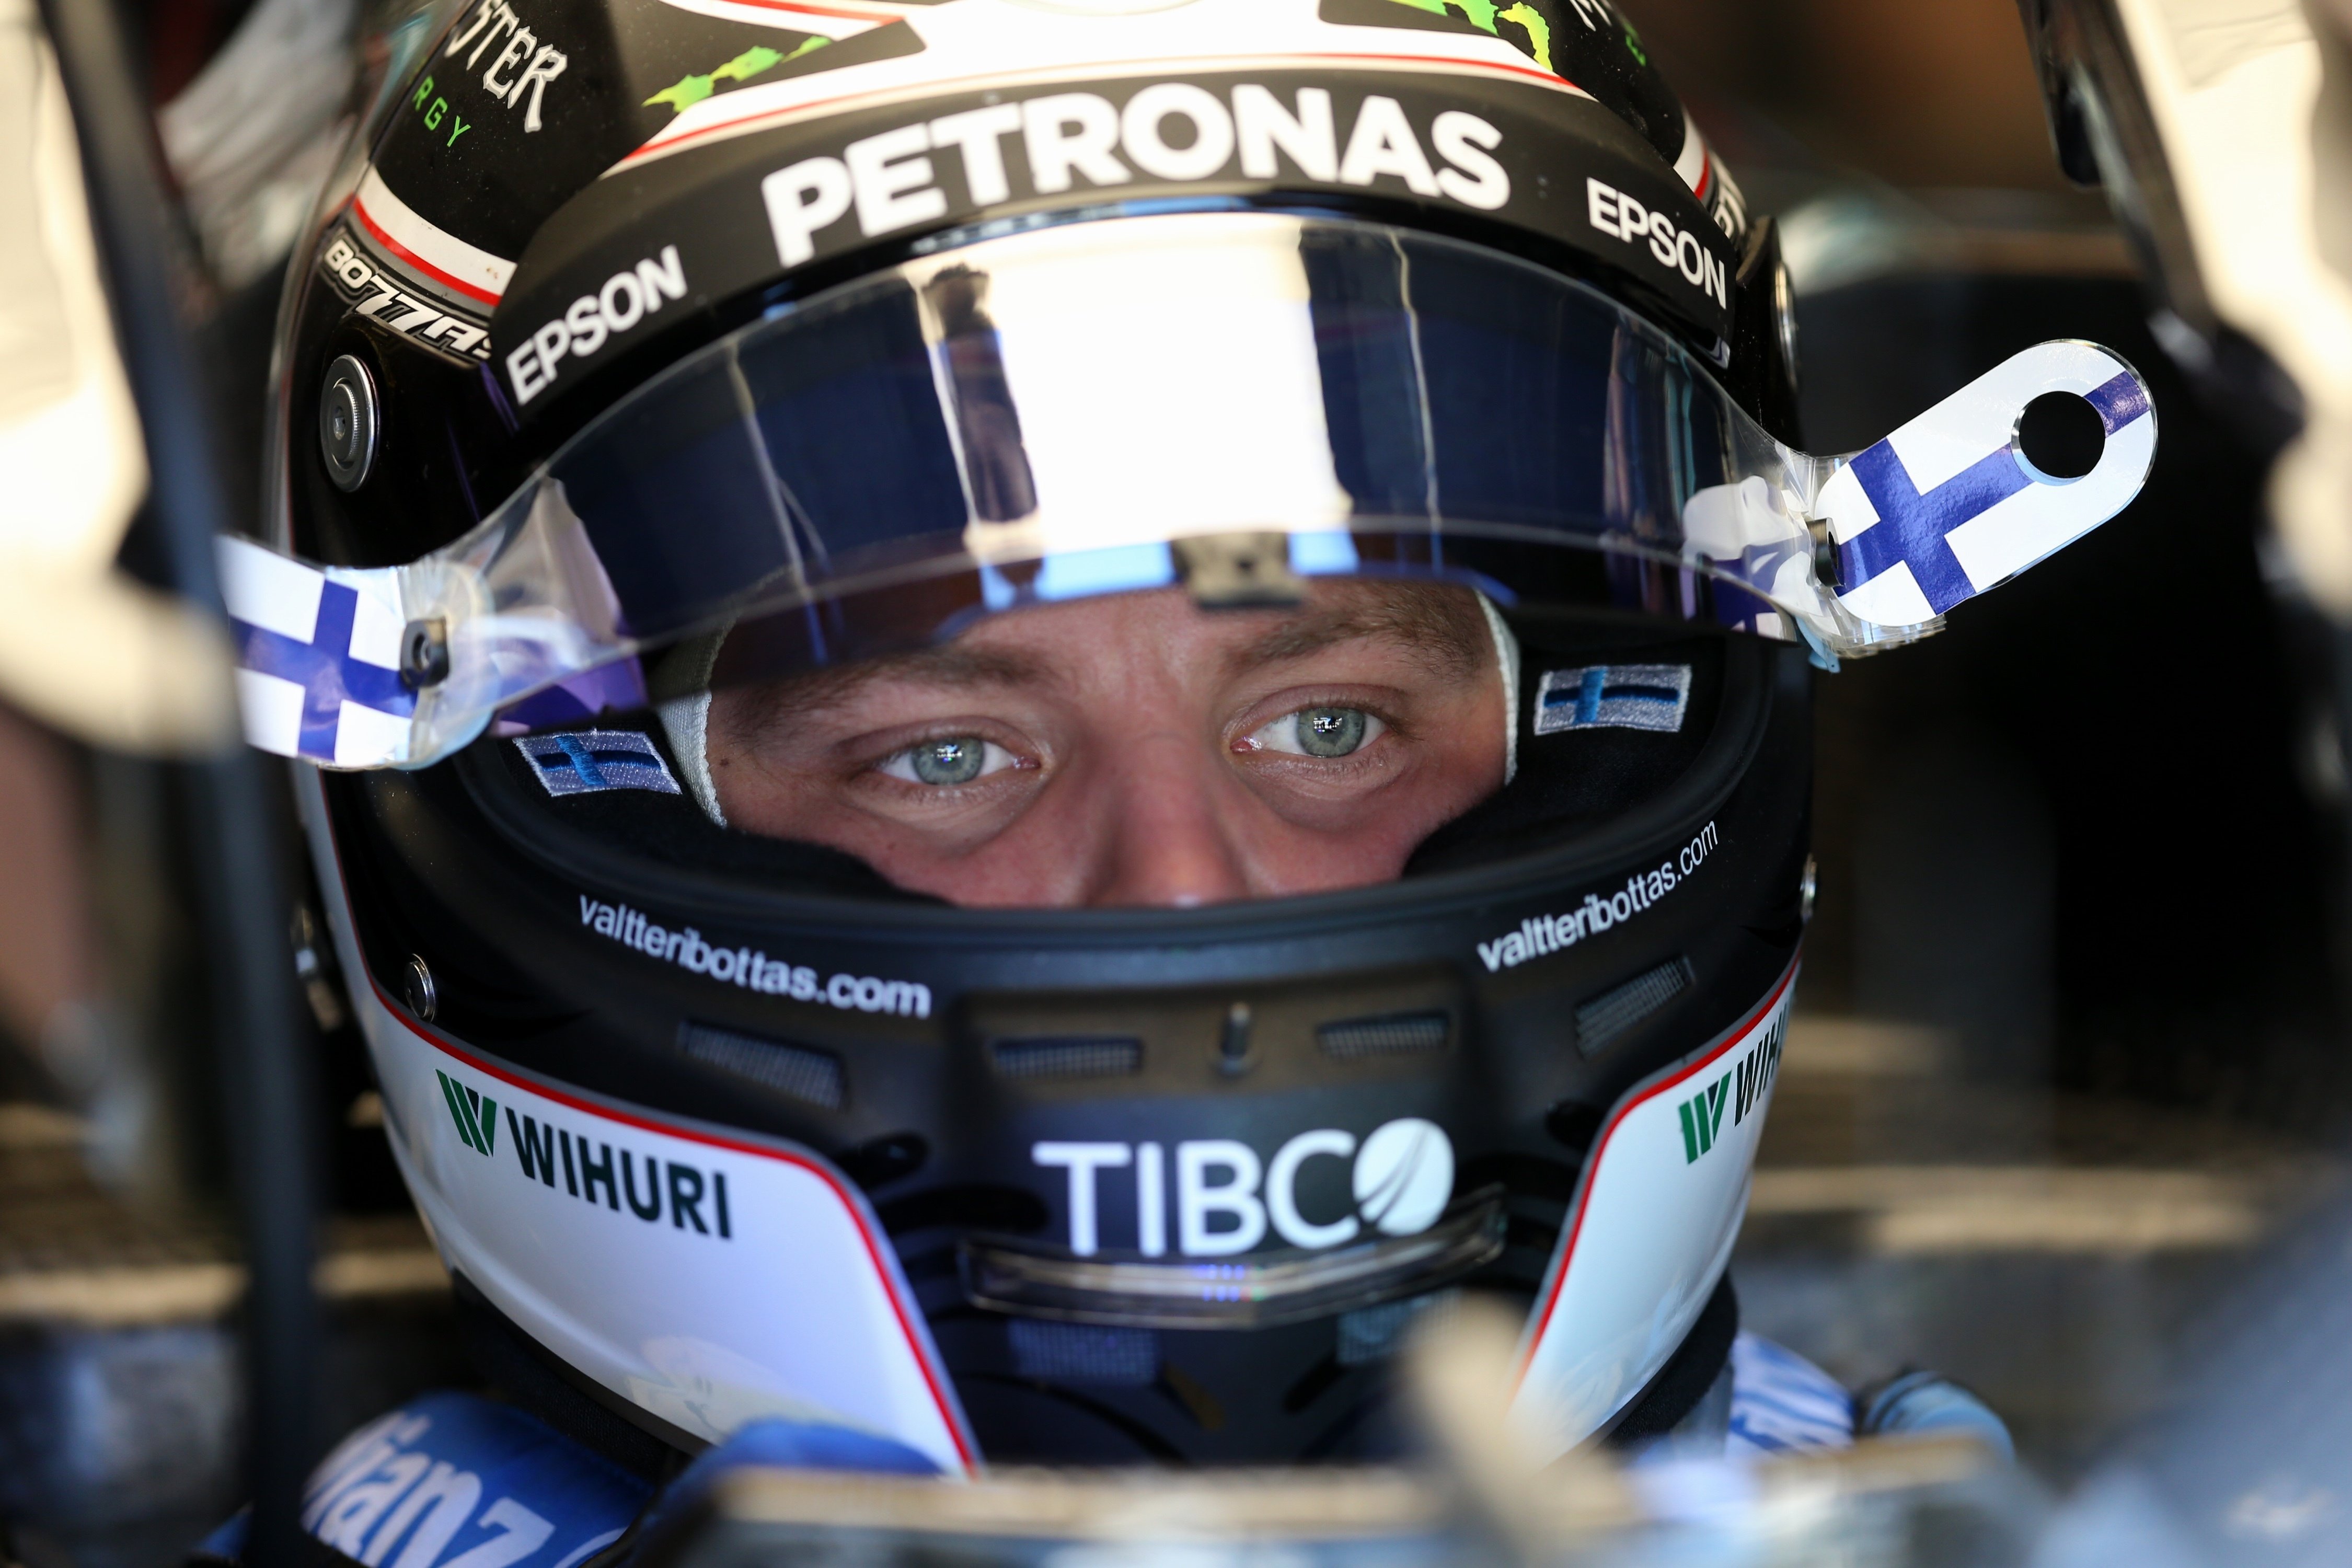 La pole de Bottas alegra Mercedes després de l'accident de Hamilton